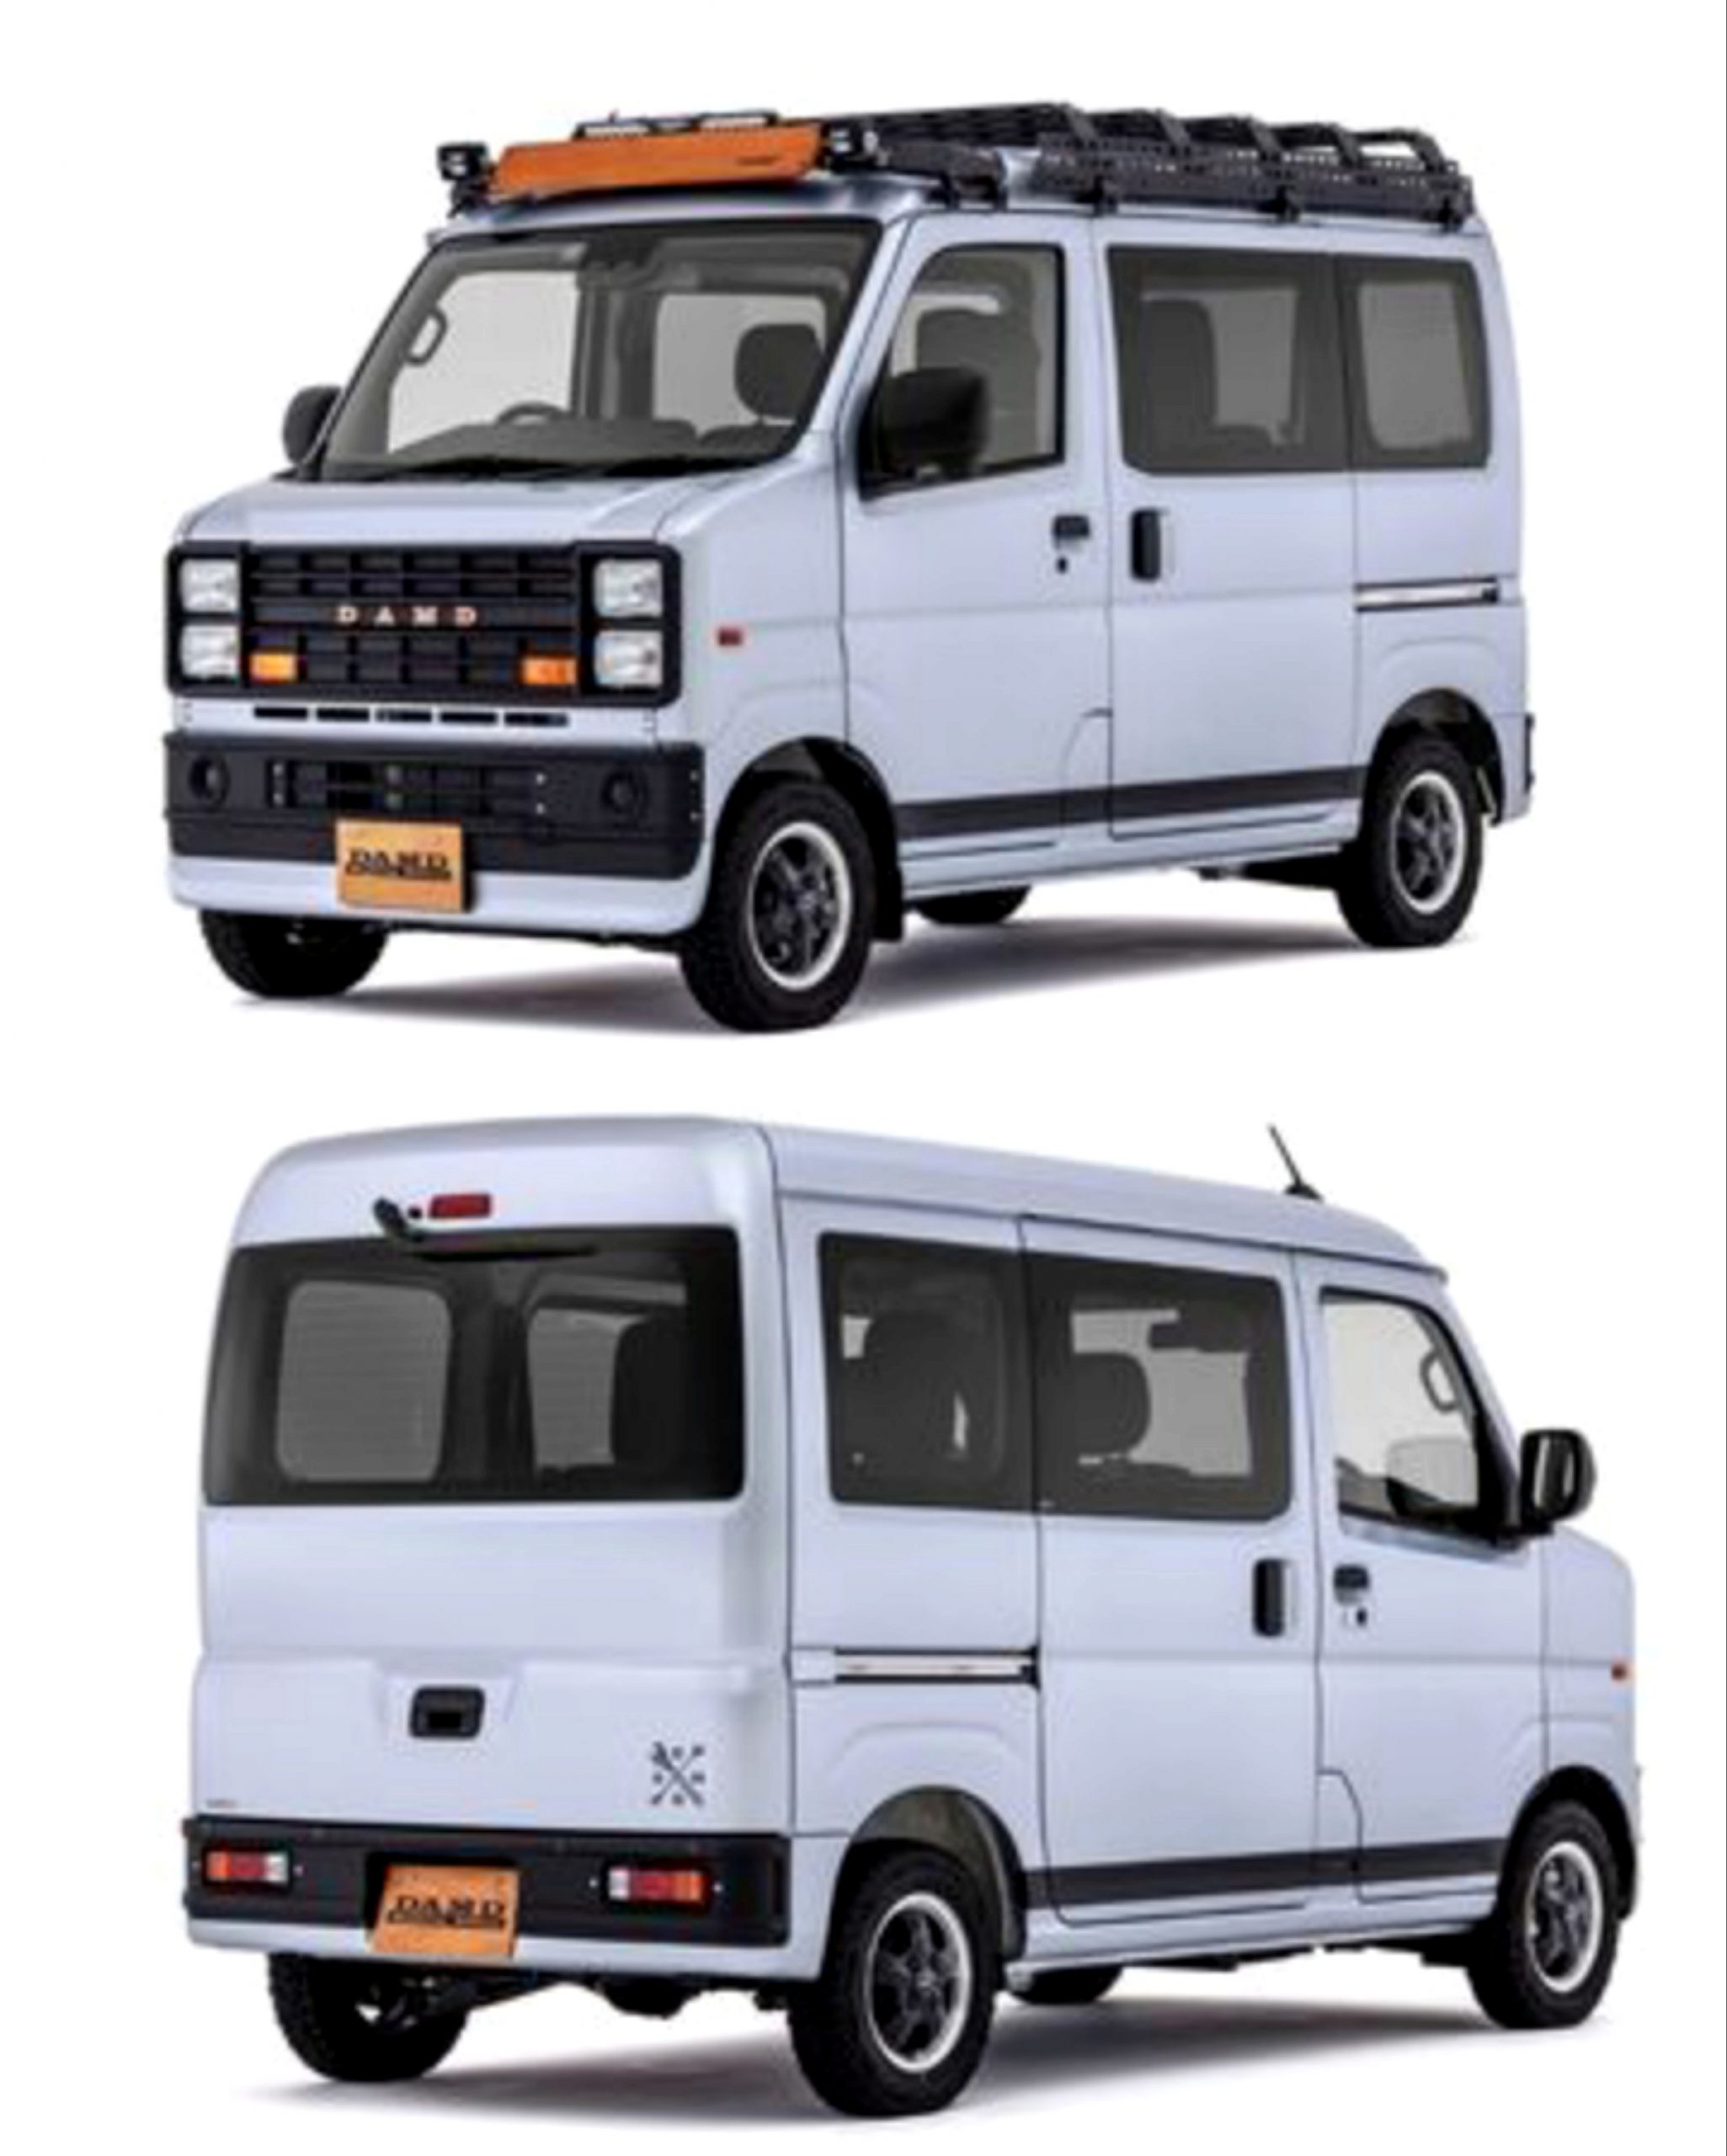 Penampakan Daihatsu Hijet berwajah mobil retro hasil garapan DAMD. l damd.co.jp